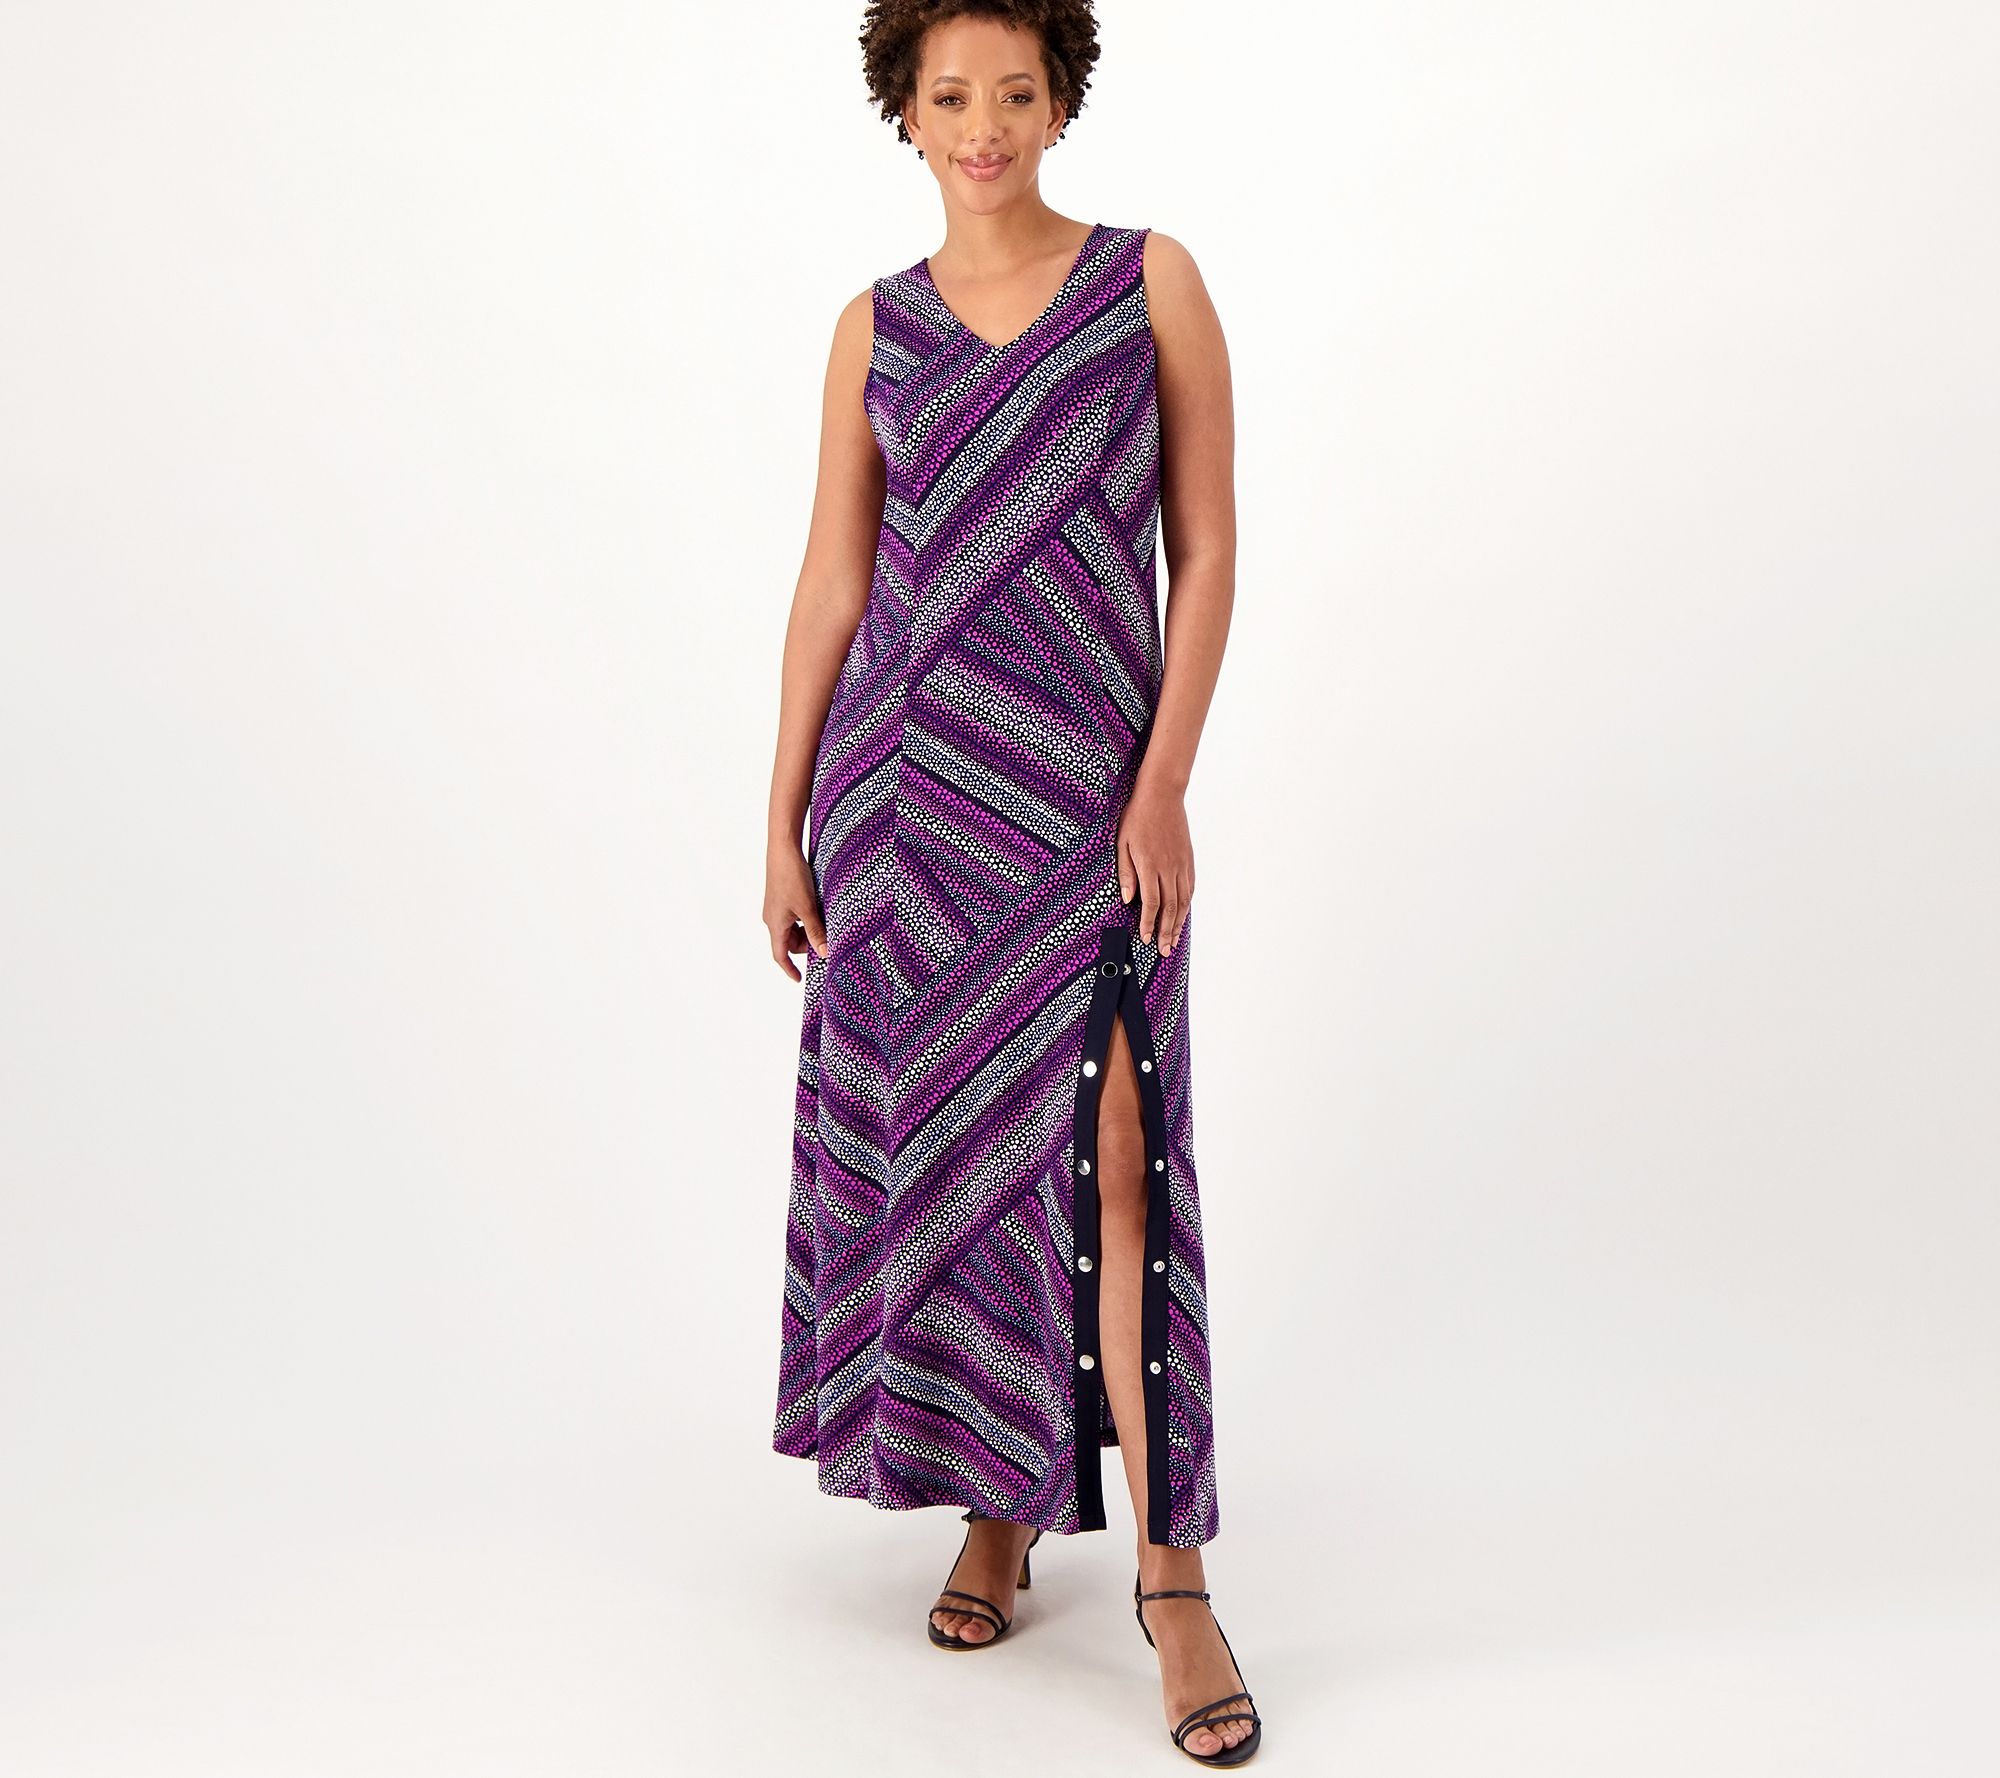 Susan Graver Petite Solid or Printed Liquid Knit Maxi Dress - QVC.com